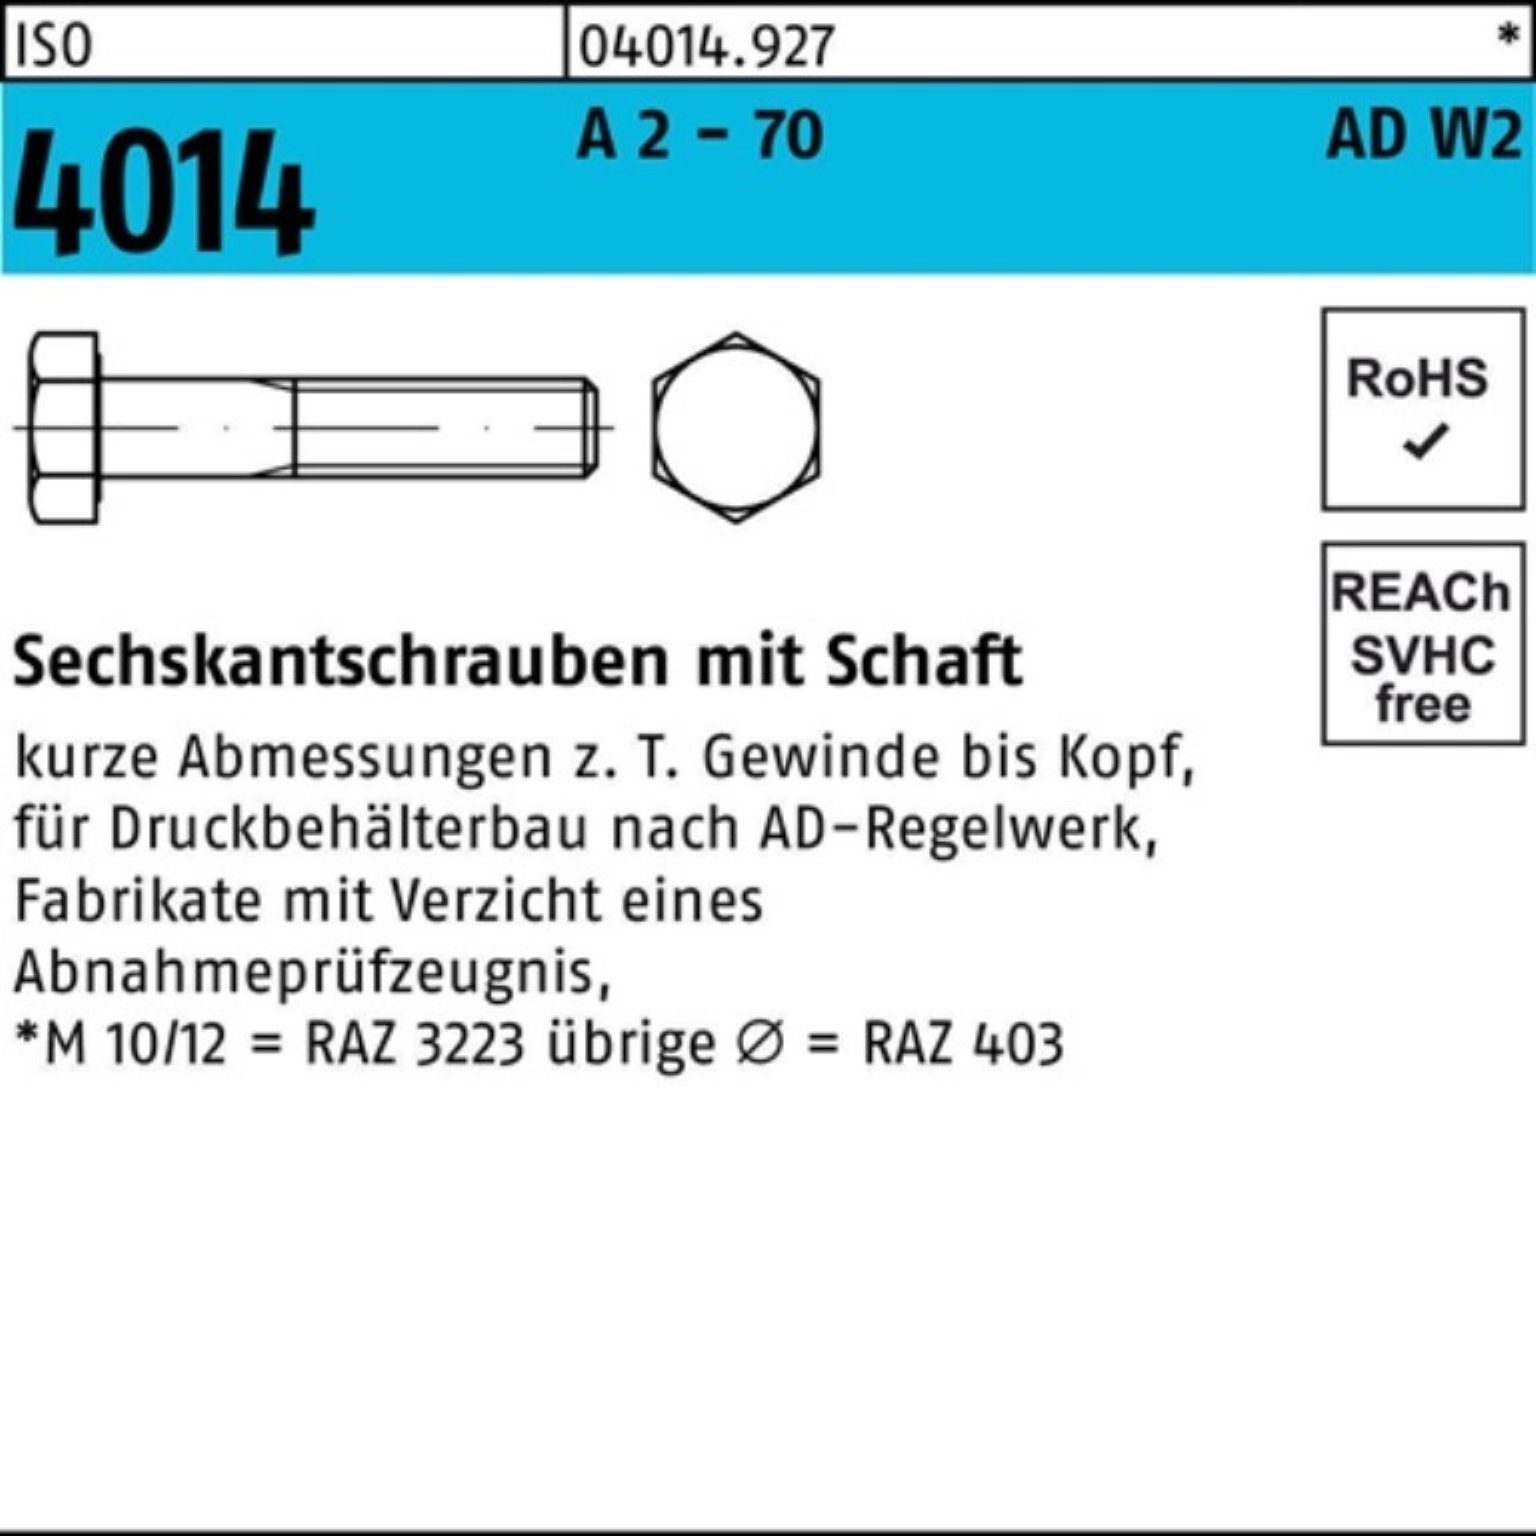 Bufab Sechskantschraube 100er Pack ISO 70 75 AD-W2 Sechskantschraube 50 A 2 M10x Schaft - 4014